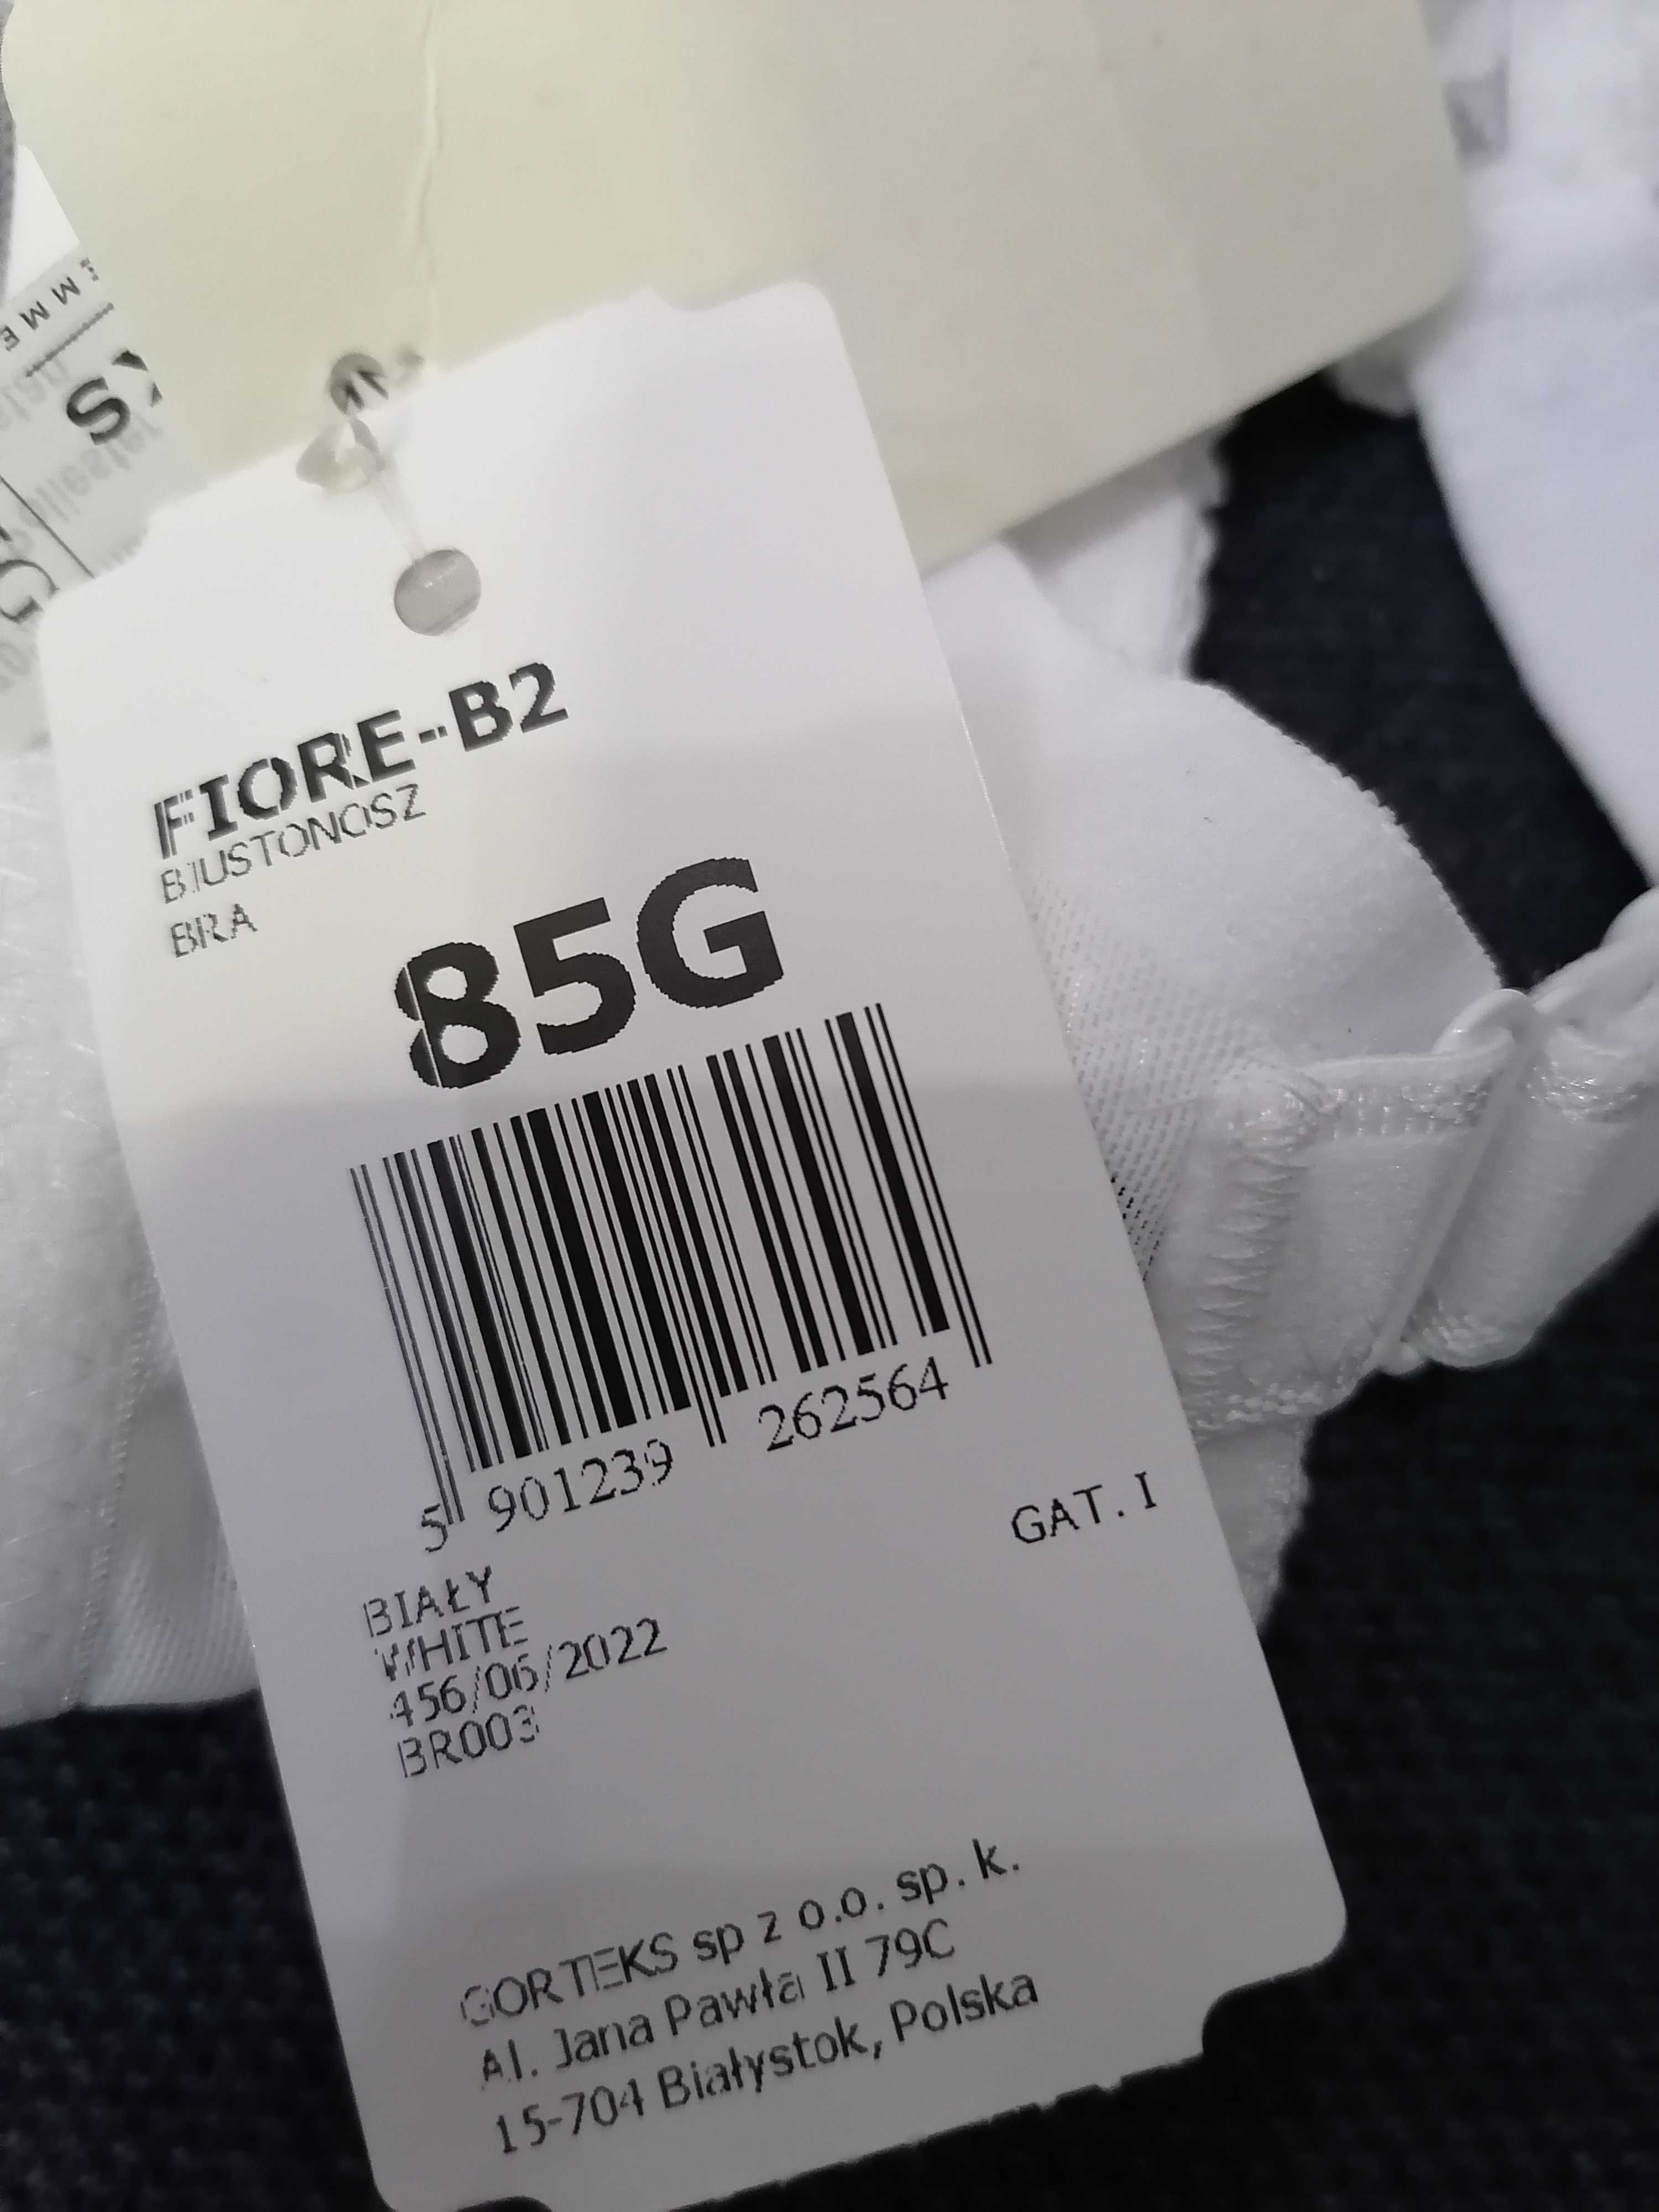 85G Gorteks Fiore-B2 biustonosz miękki z haftem biały